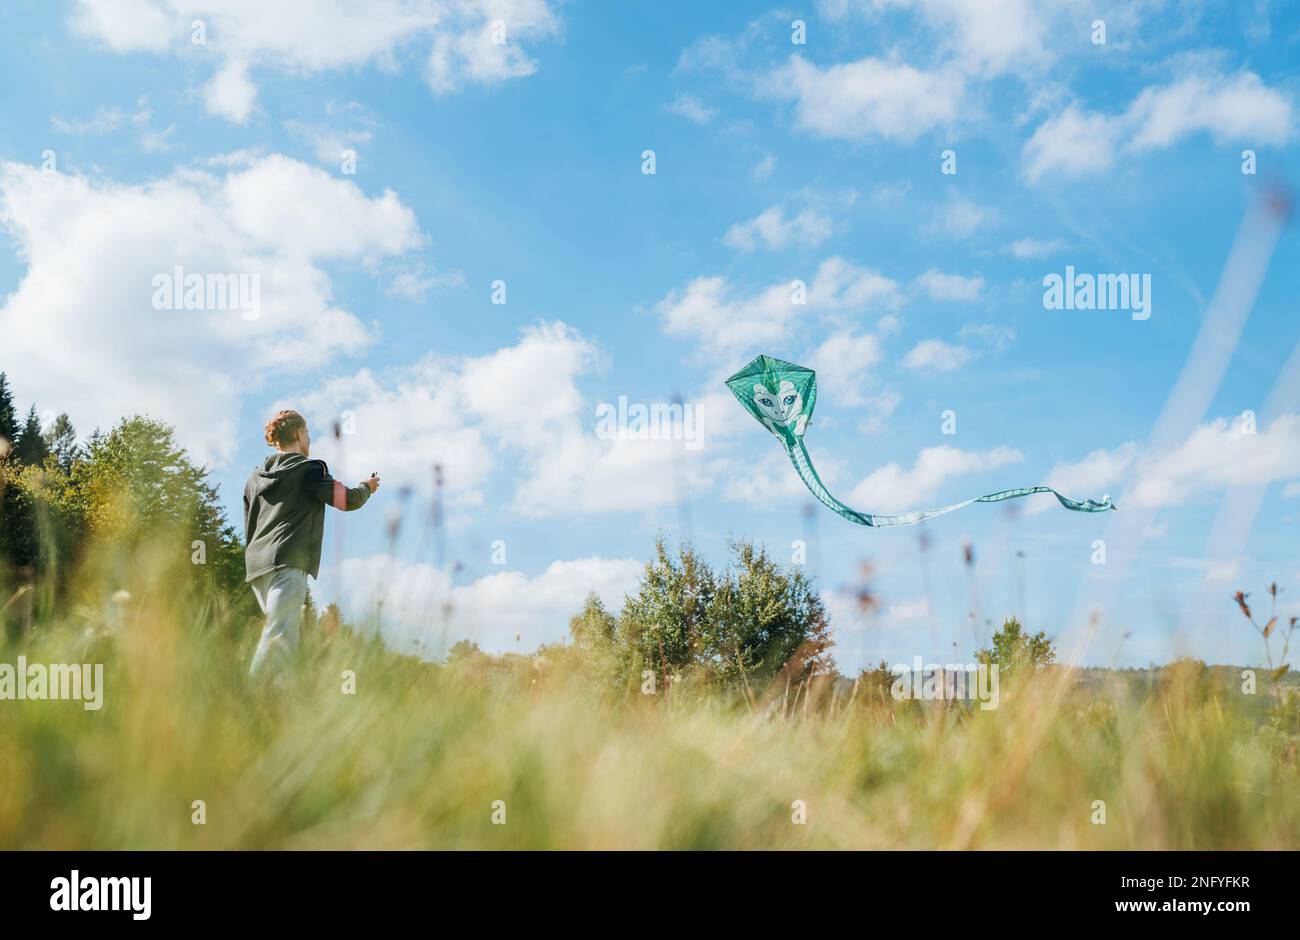 Ein Teenager auf der grünen Wiese wirft einen grünen Drachen mit einem langen Schwanz ab. Fröhliche Kindheitserlebnisse oder Konzeptfoto „Zeit im Freien verbringen“ Stockfoto